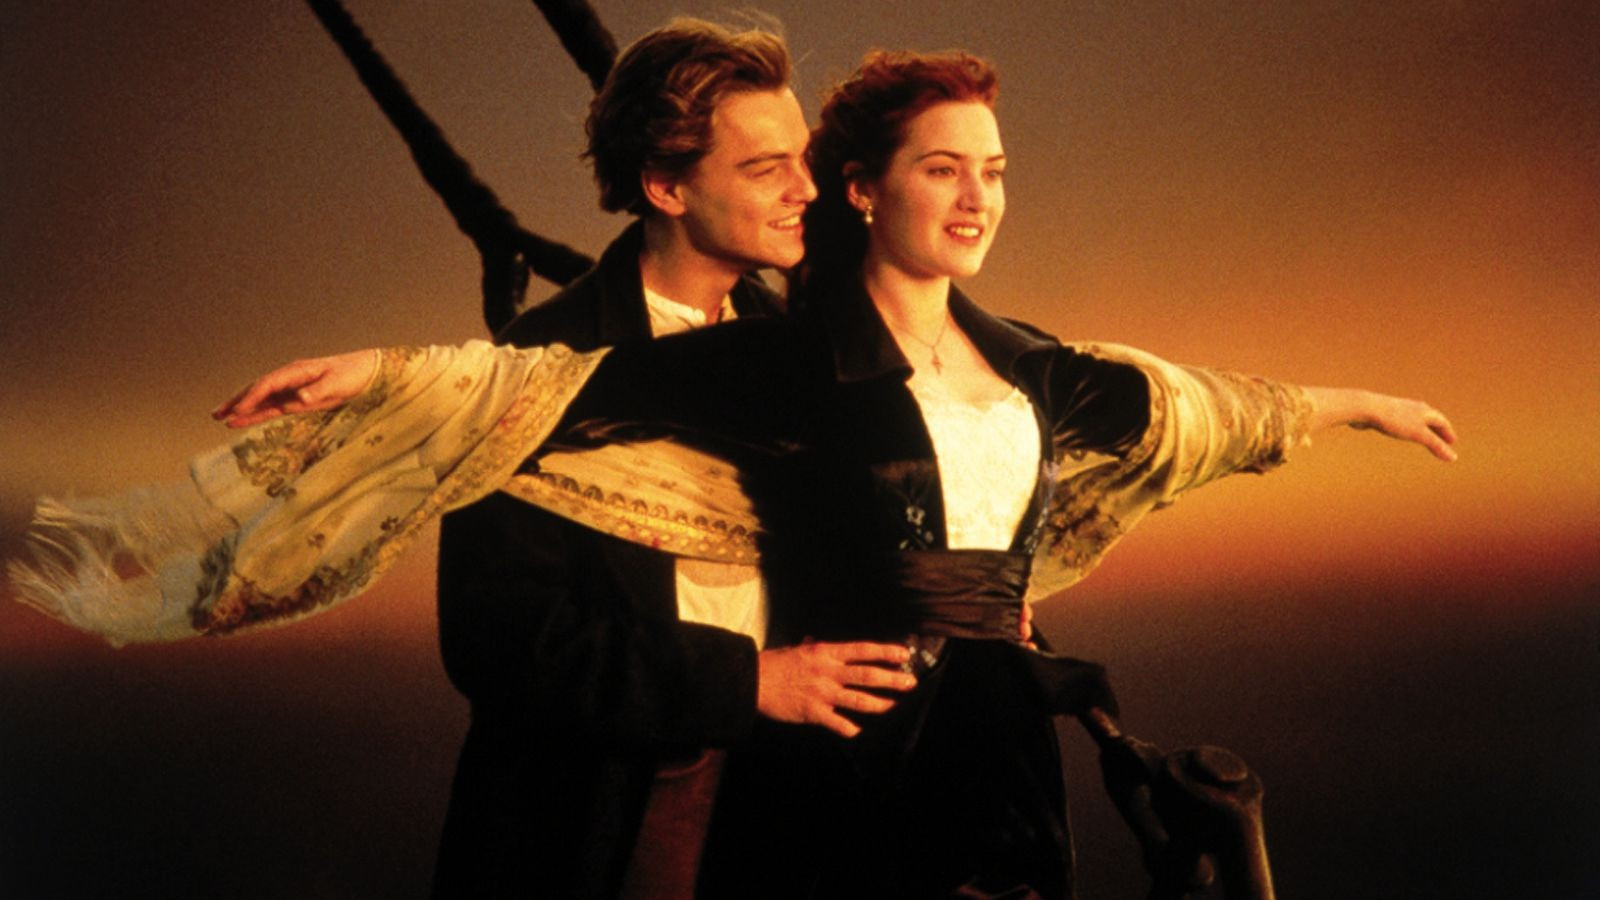 Cú lừa của cặp đôi Titanic khiến công chúng thấp thỏm 25 năm qua - 3